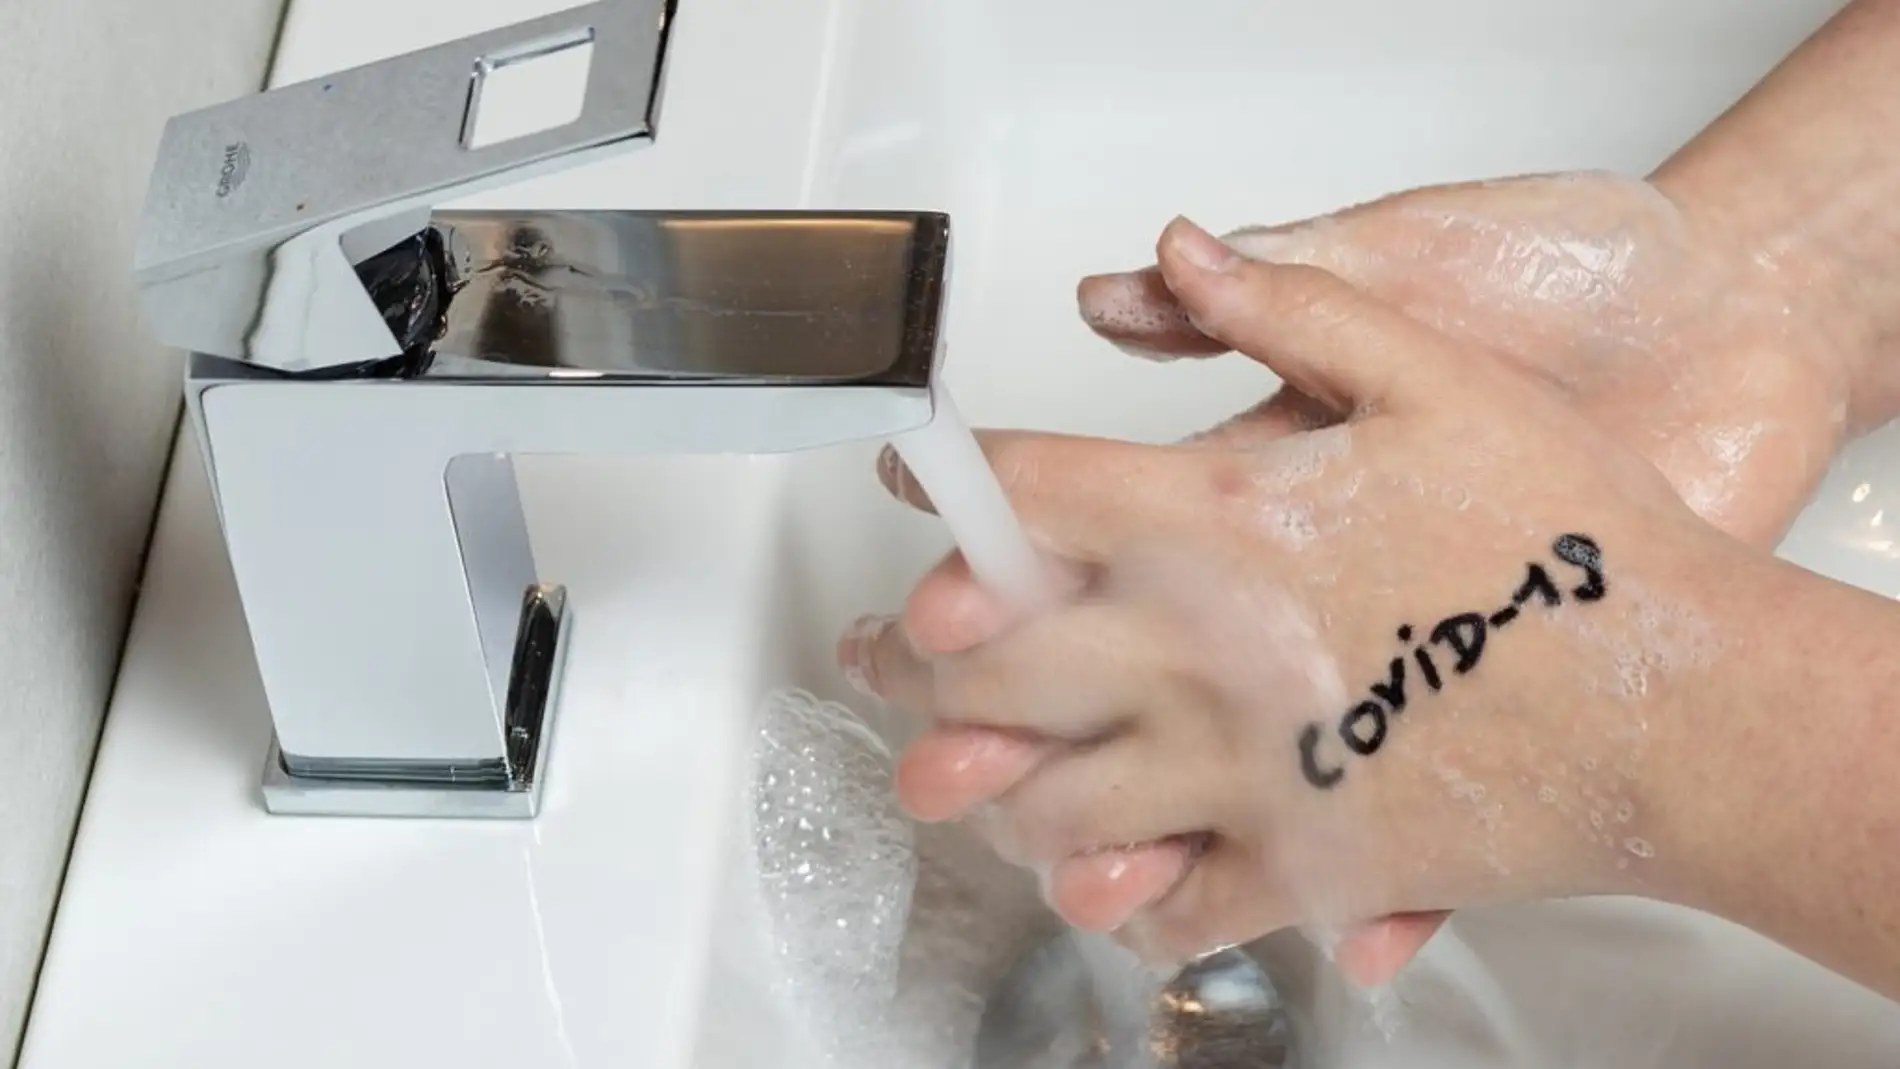 El lavado de manos, prevención frente al COVID-19